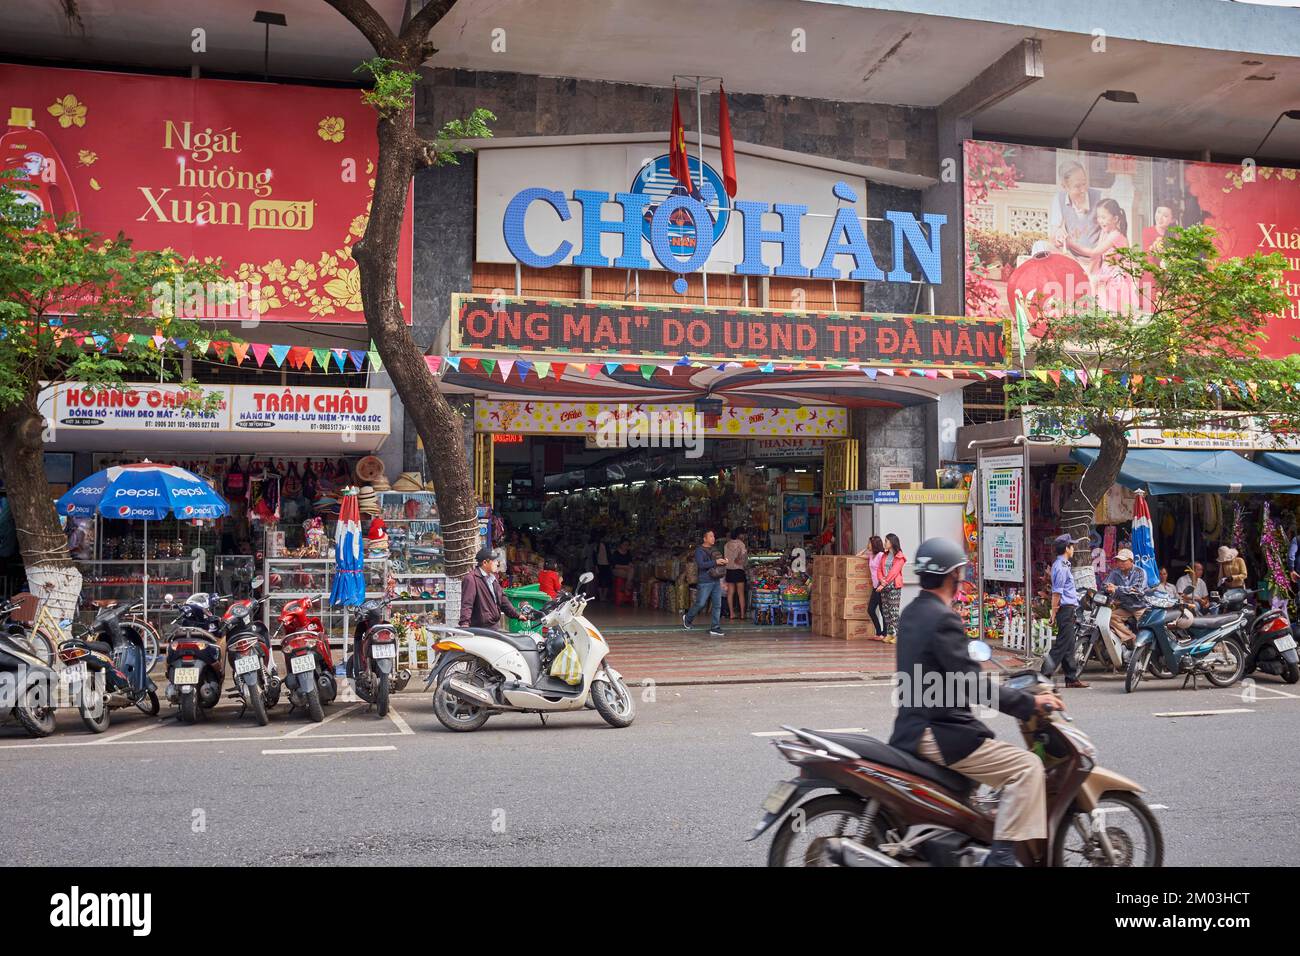 Cho Han Market Hanoi Vietnam Stock Photo